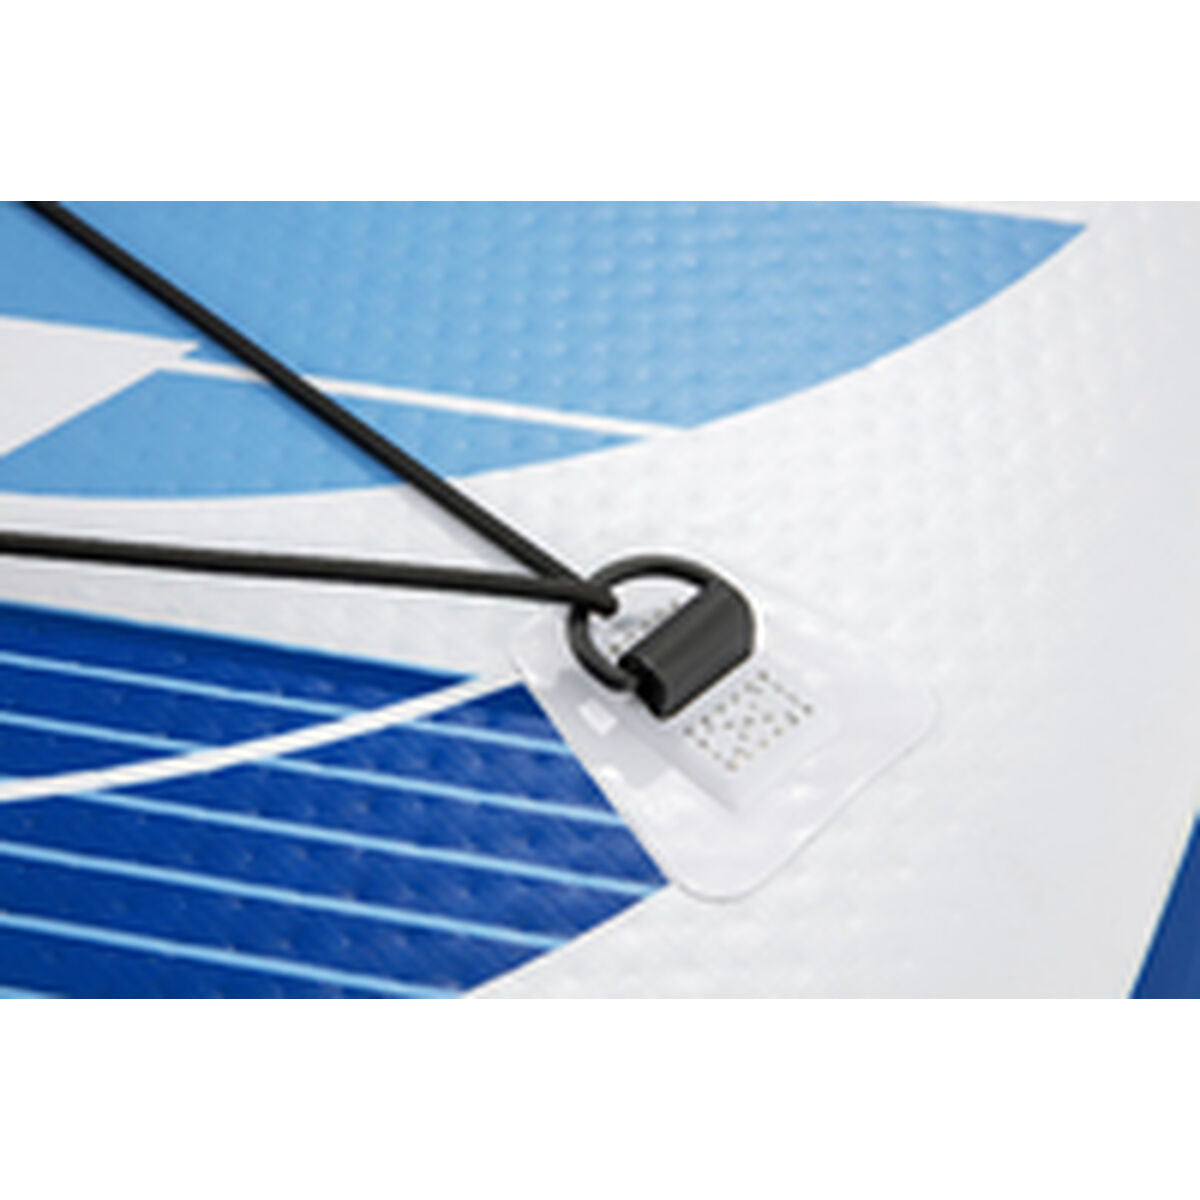 Tavola da Paddle Surf Gonfiabile con Accessori Bestway Hydro-Force 305 x 84 x 12 cm